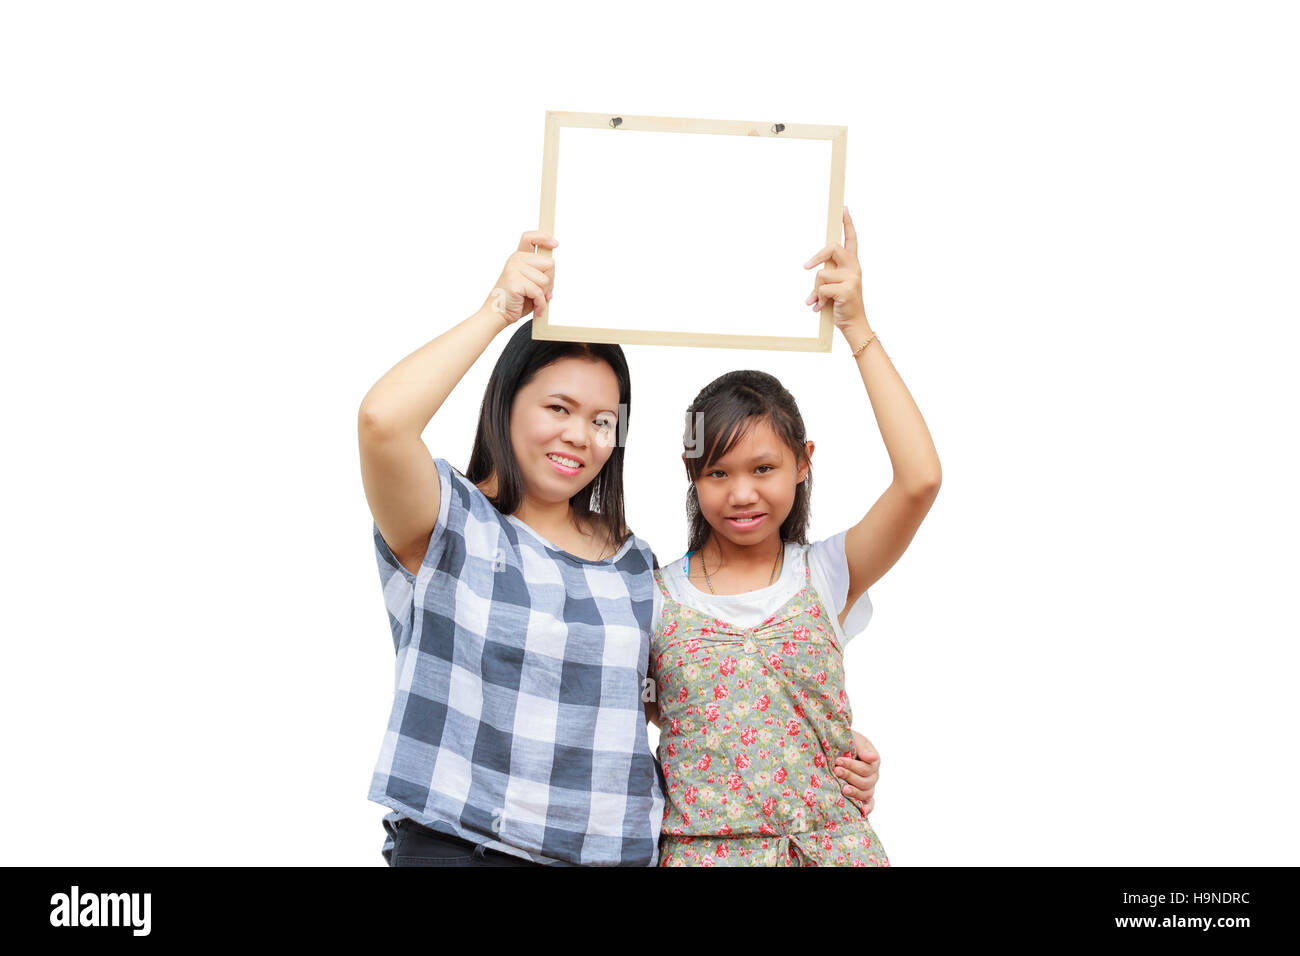 Mère et fille asiatique Thaïlande sourire holding blank board, isolé sur fond blanc avec l'exemplaire de l'espace. Carte avec vide pouvez ajouter votre texte ou autre Banque D'Images